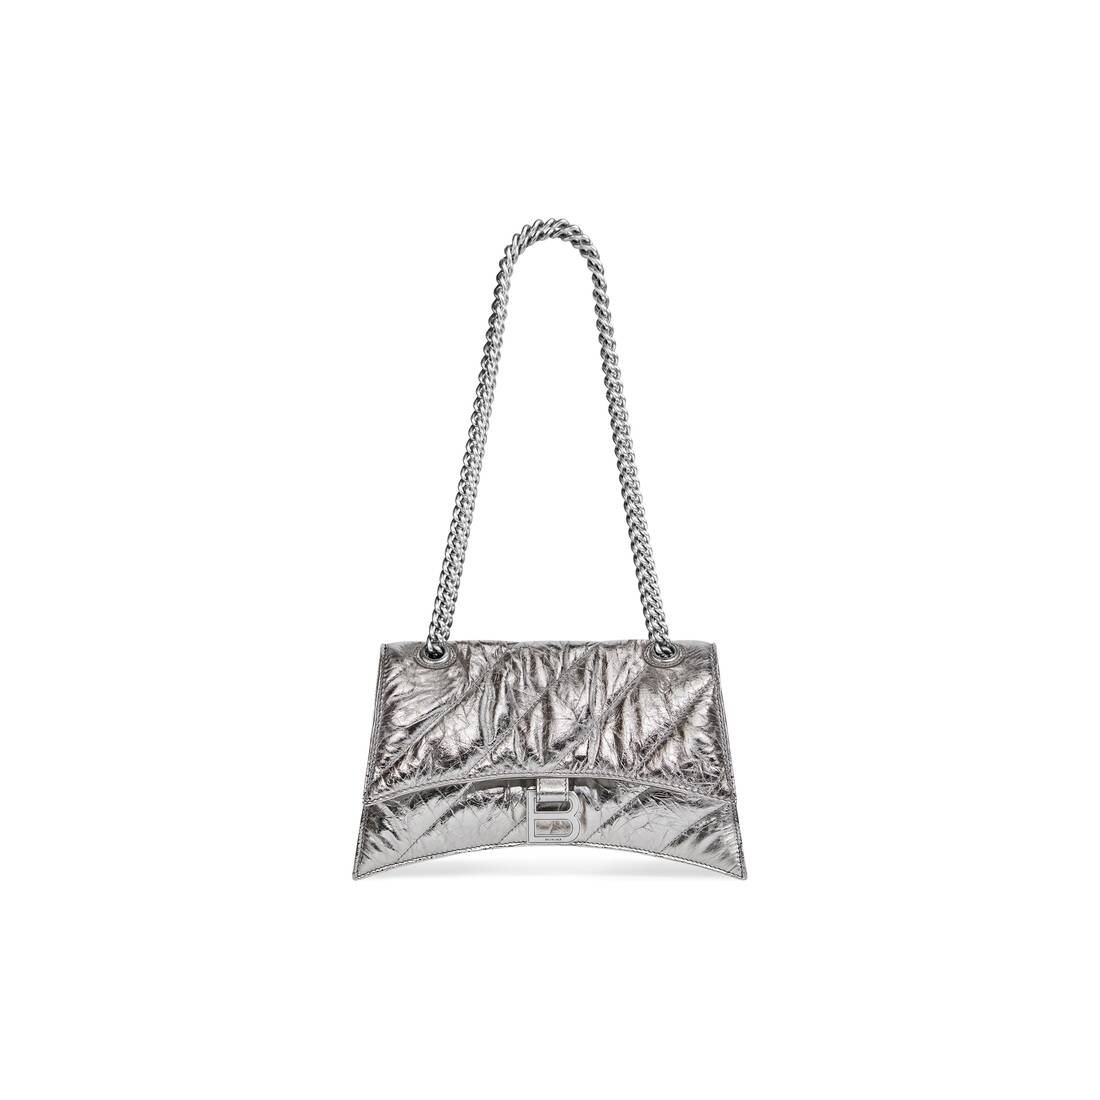 Balenciaga Hourglass Small Metallic Silver Satchel Bag Designer